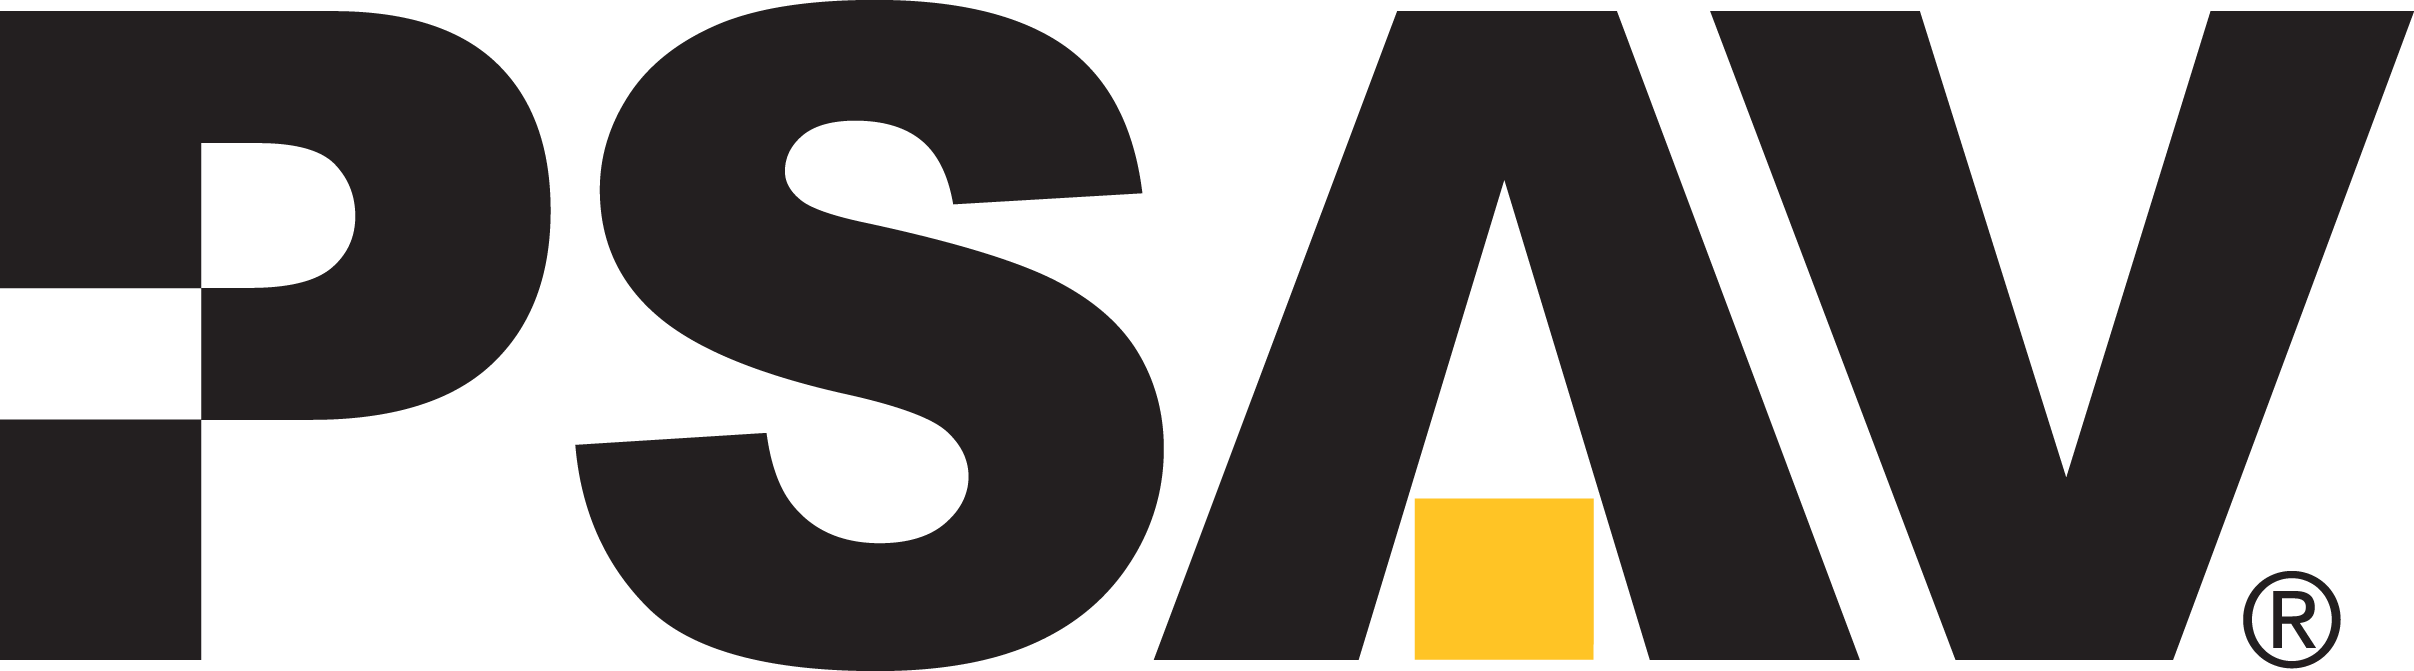 PSAV logo